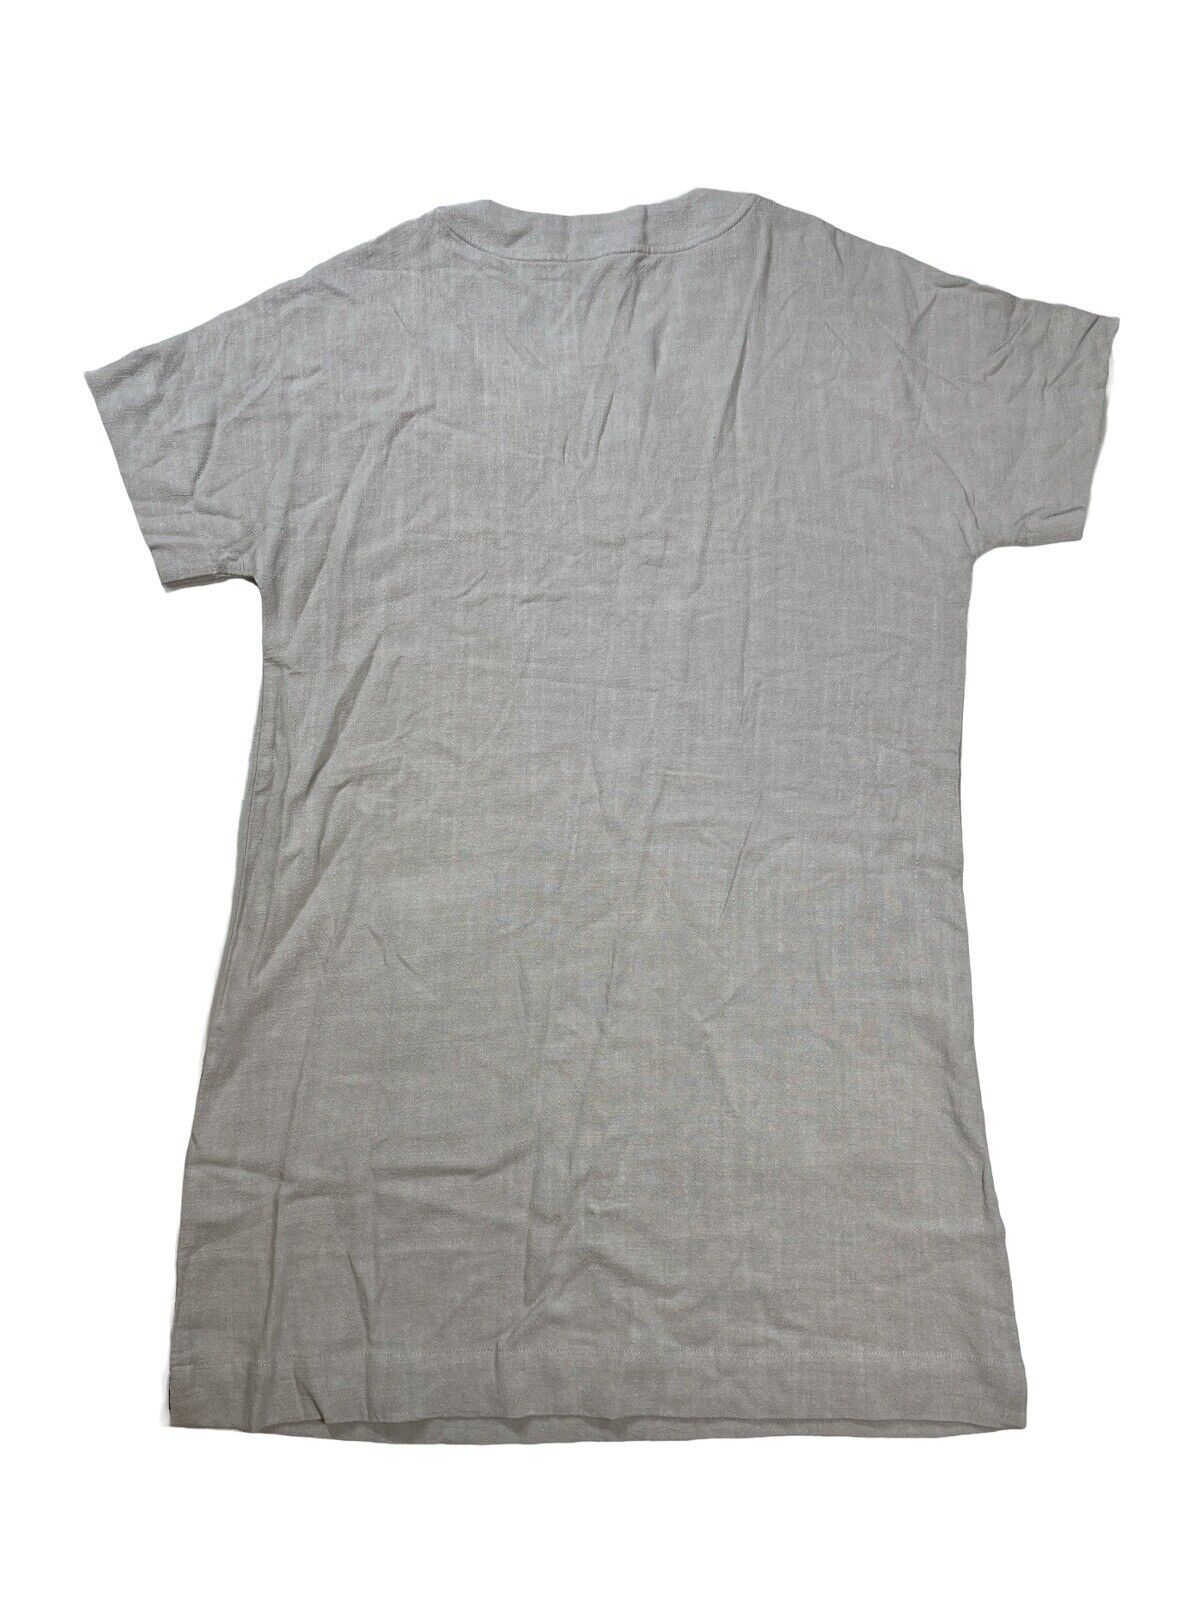 NUEVO Splendid Vestido estilo camiseta en mezcla de lino marrón cervatillo para mujer - XS